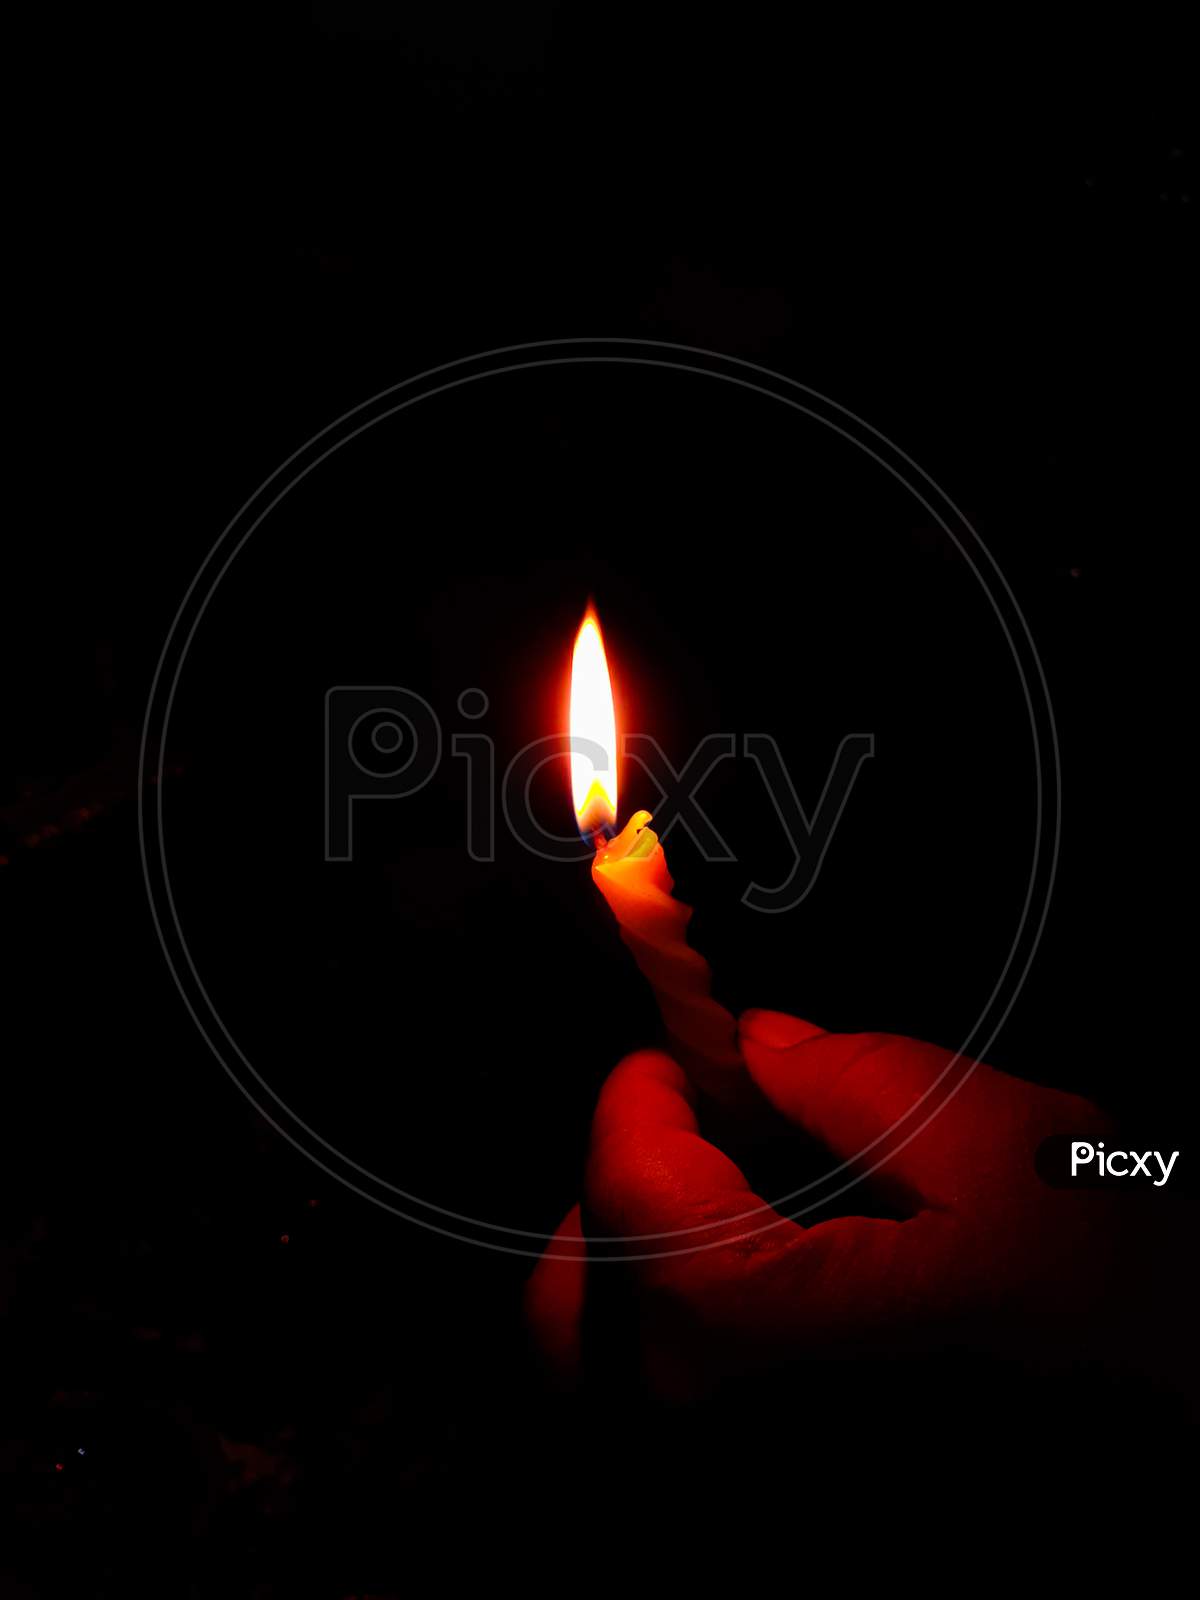 candel brighten the darkness of room